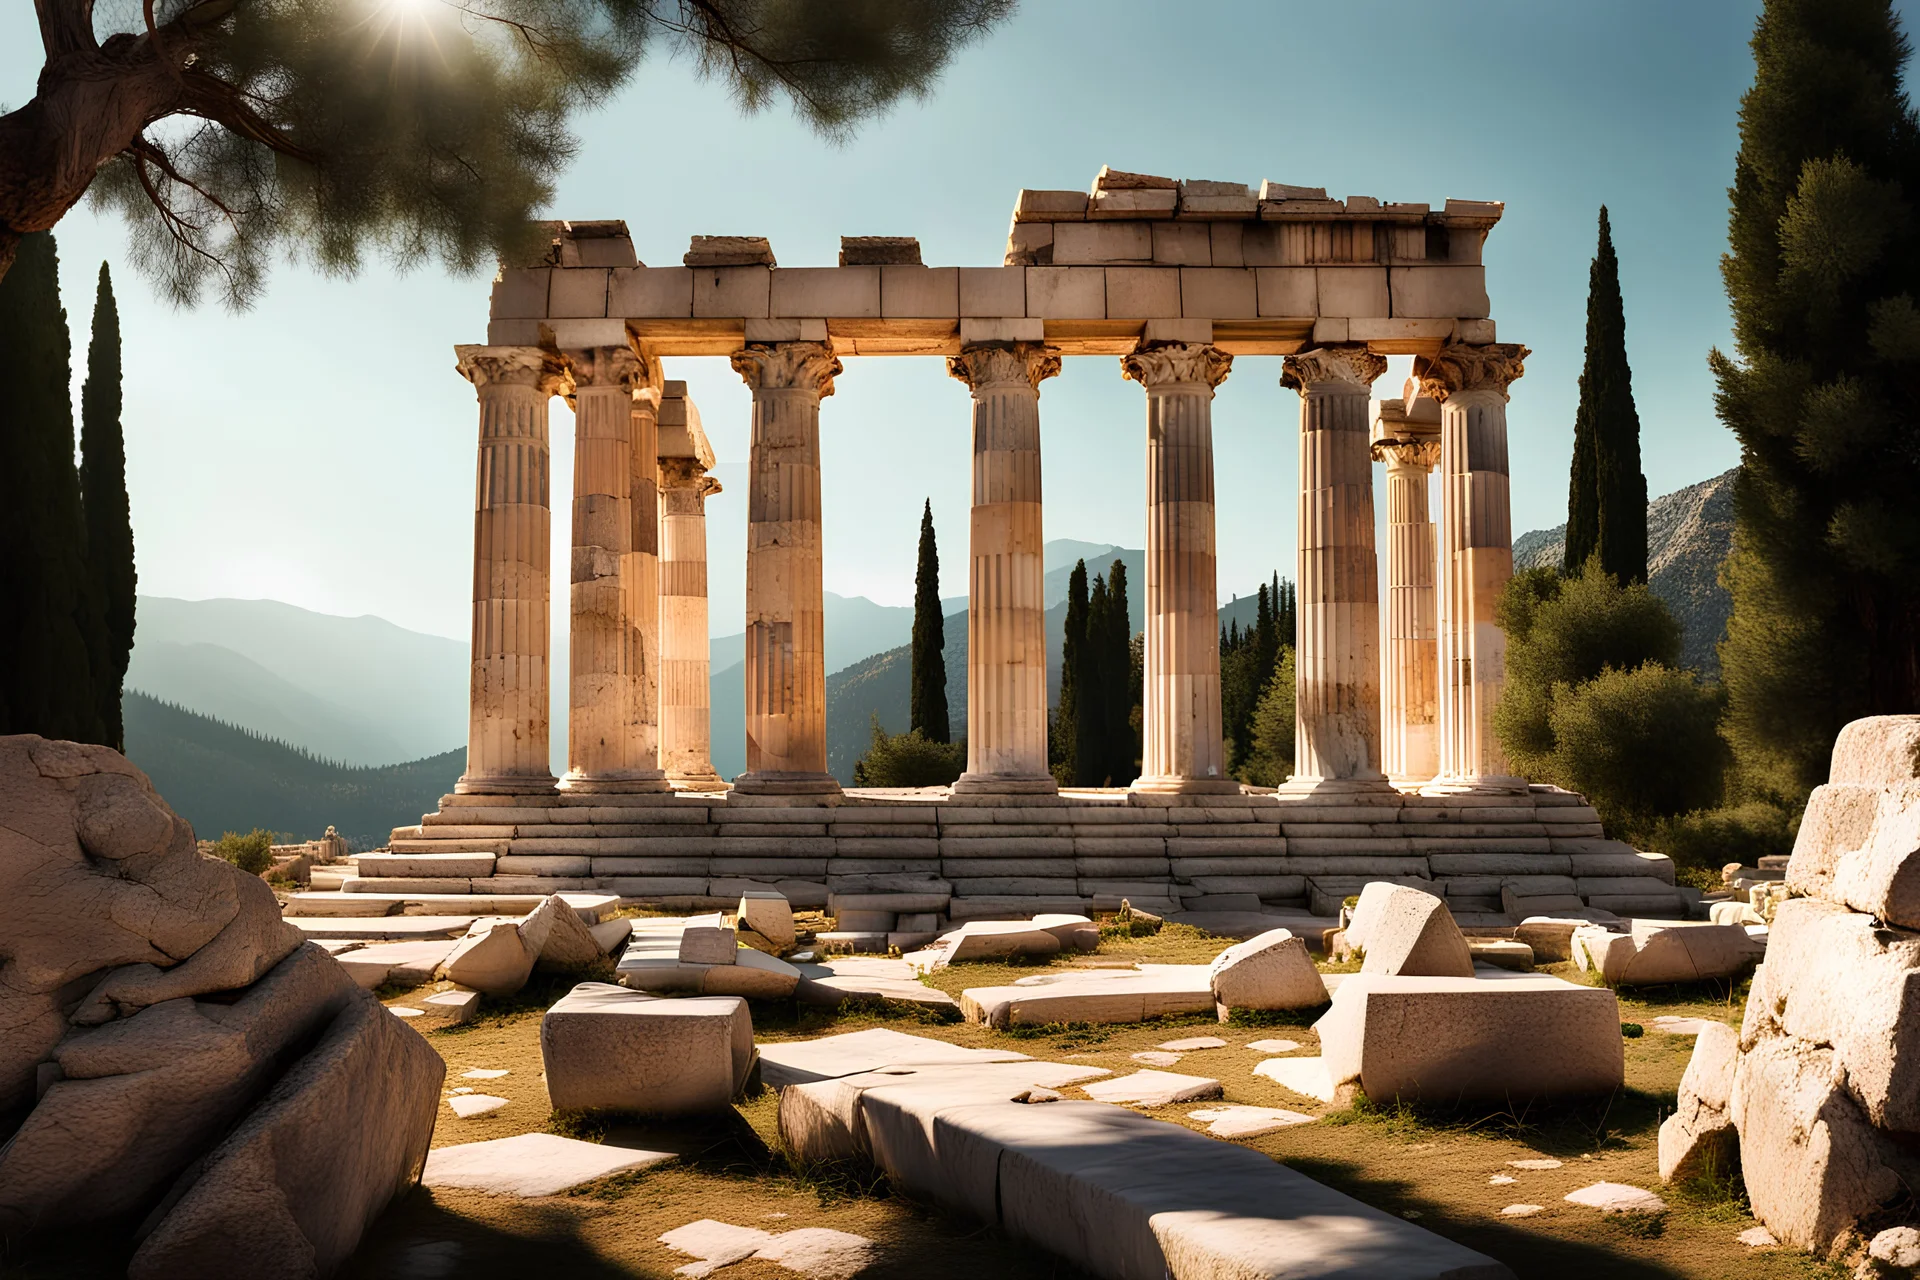 photographie haute résolution d'un temple grecque en marbre blanc, en ruine, angle de vue parfait, en extérieur, soleil éclatant, verdures, arbres méditerranéens tout autour, pinède, comme à Delphes en Grèce.